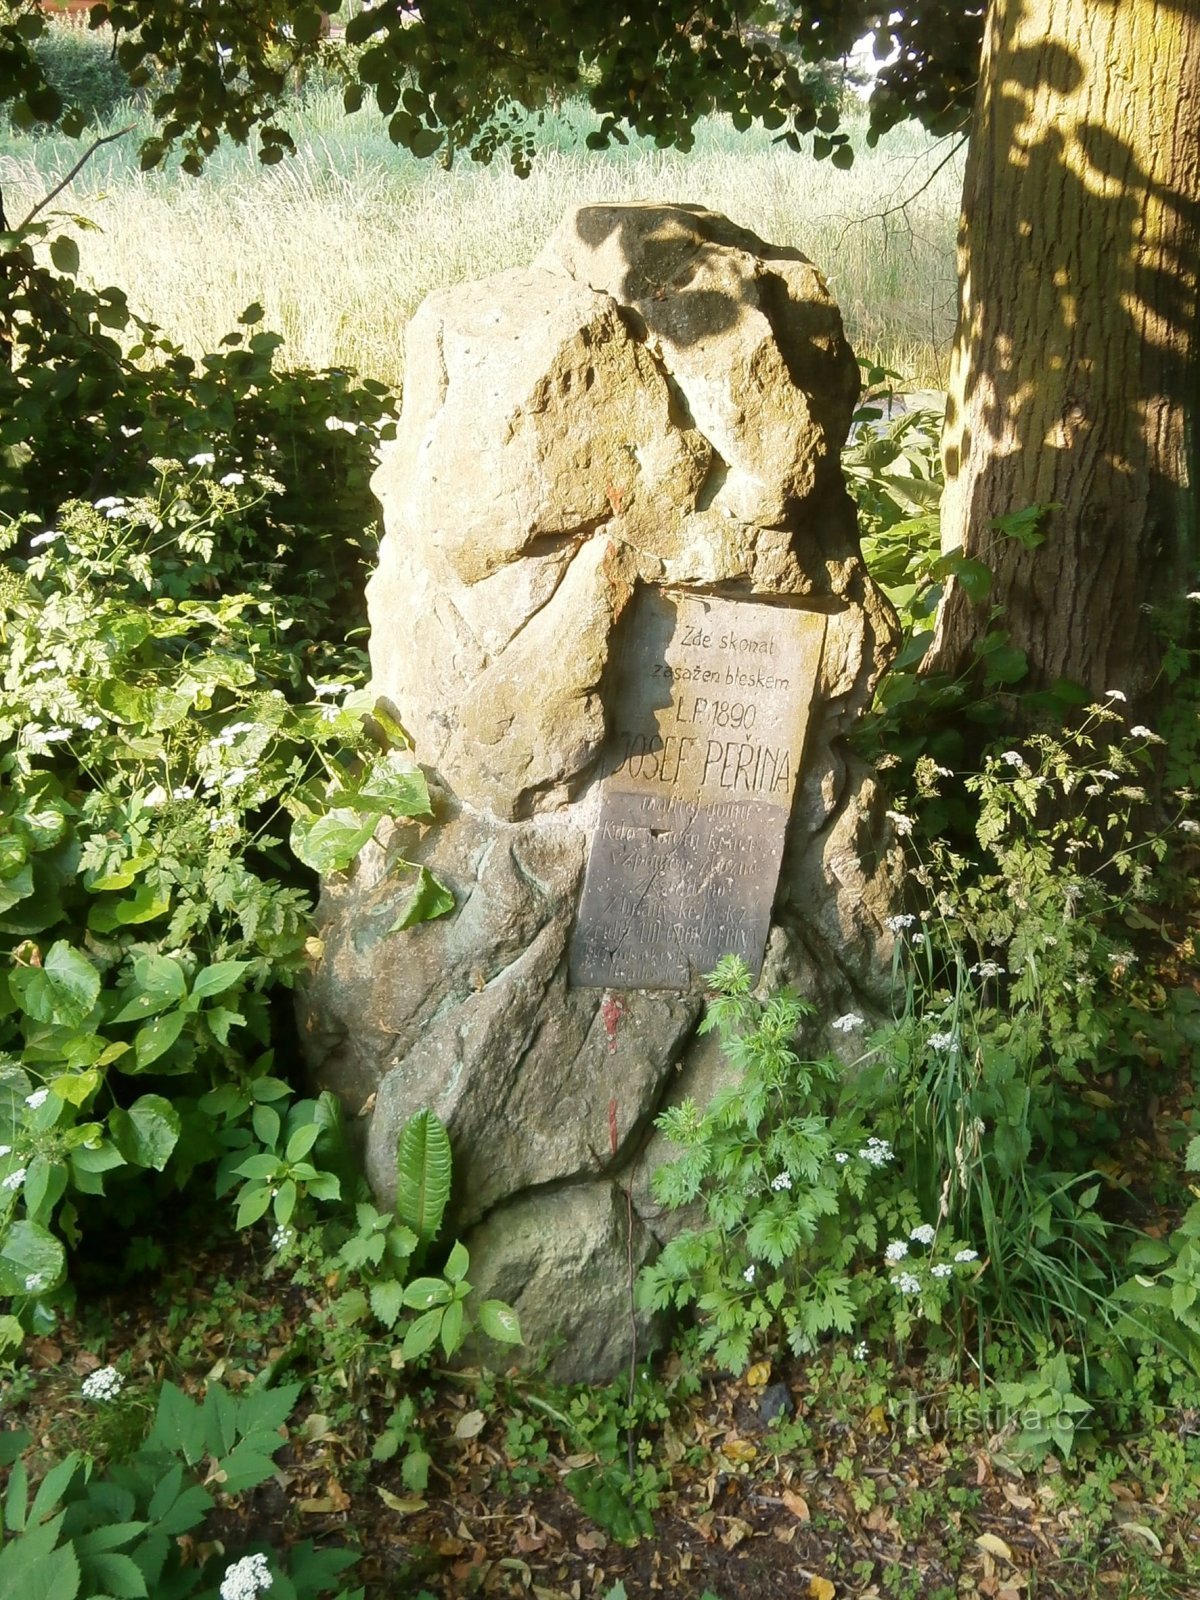 Monument à Josef Peřina (Hradec Králové, 23.6.2013/XNUMX/XNUMX)